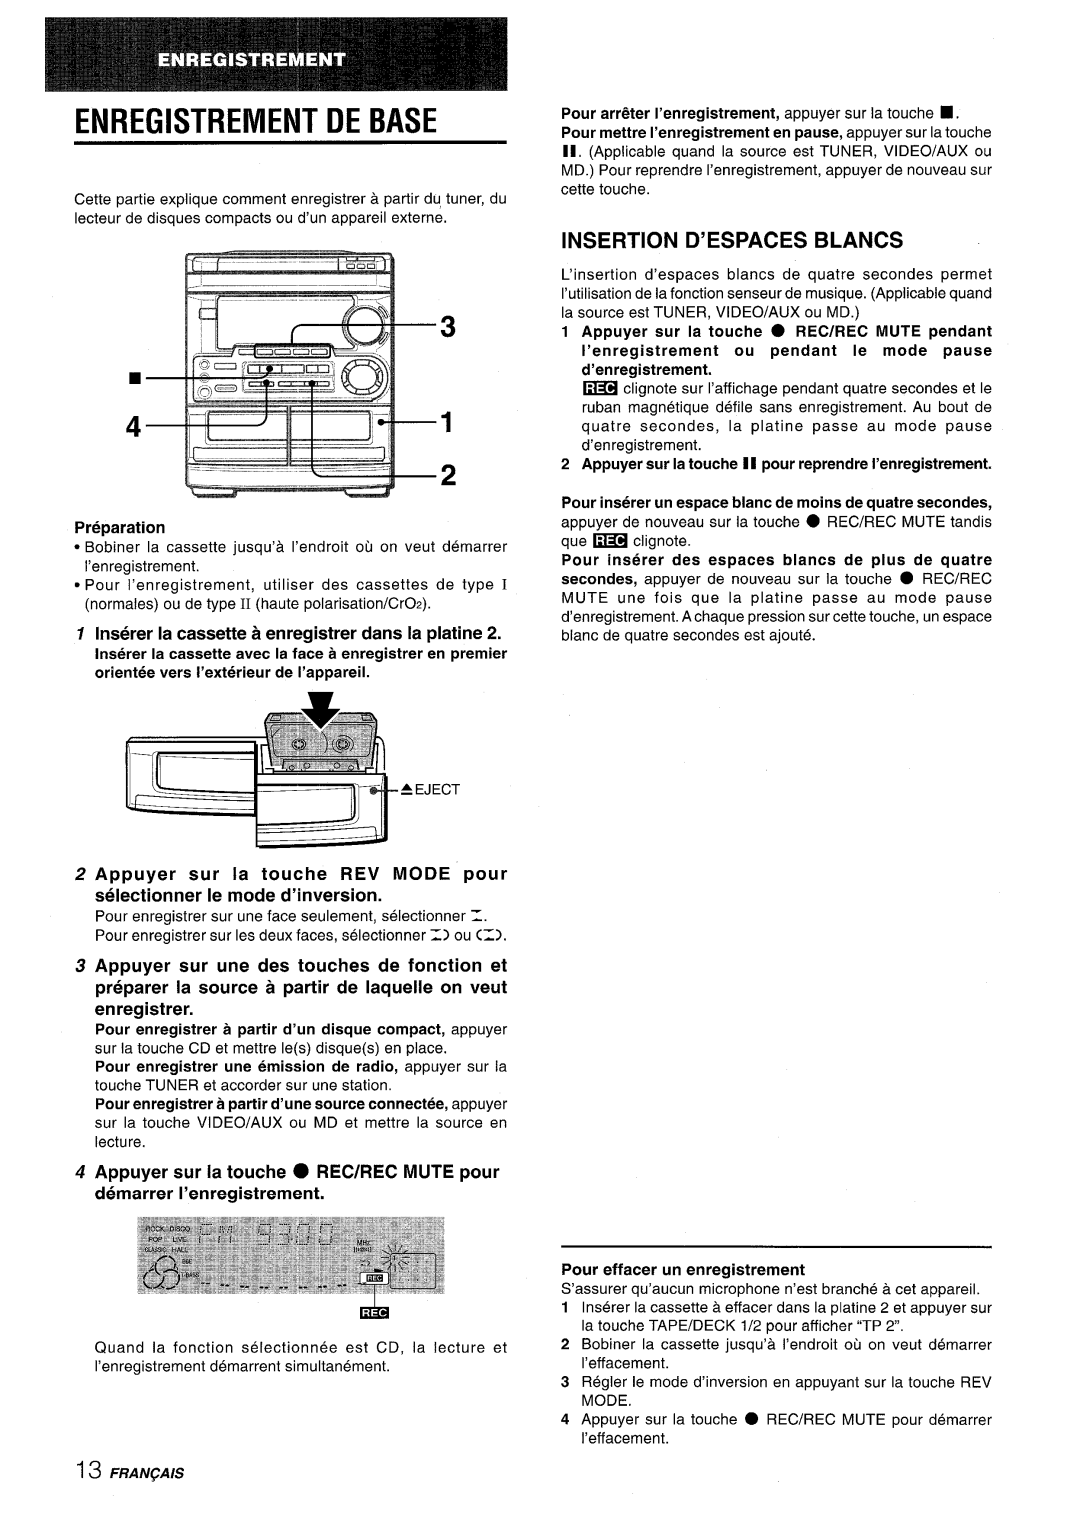 Aiwa CX-NMT50 manual Enregistrement De Base, Insertion D’Espaces Blancs, Inserer la cassette a enregistrer clans la platine 